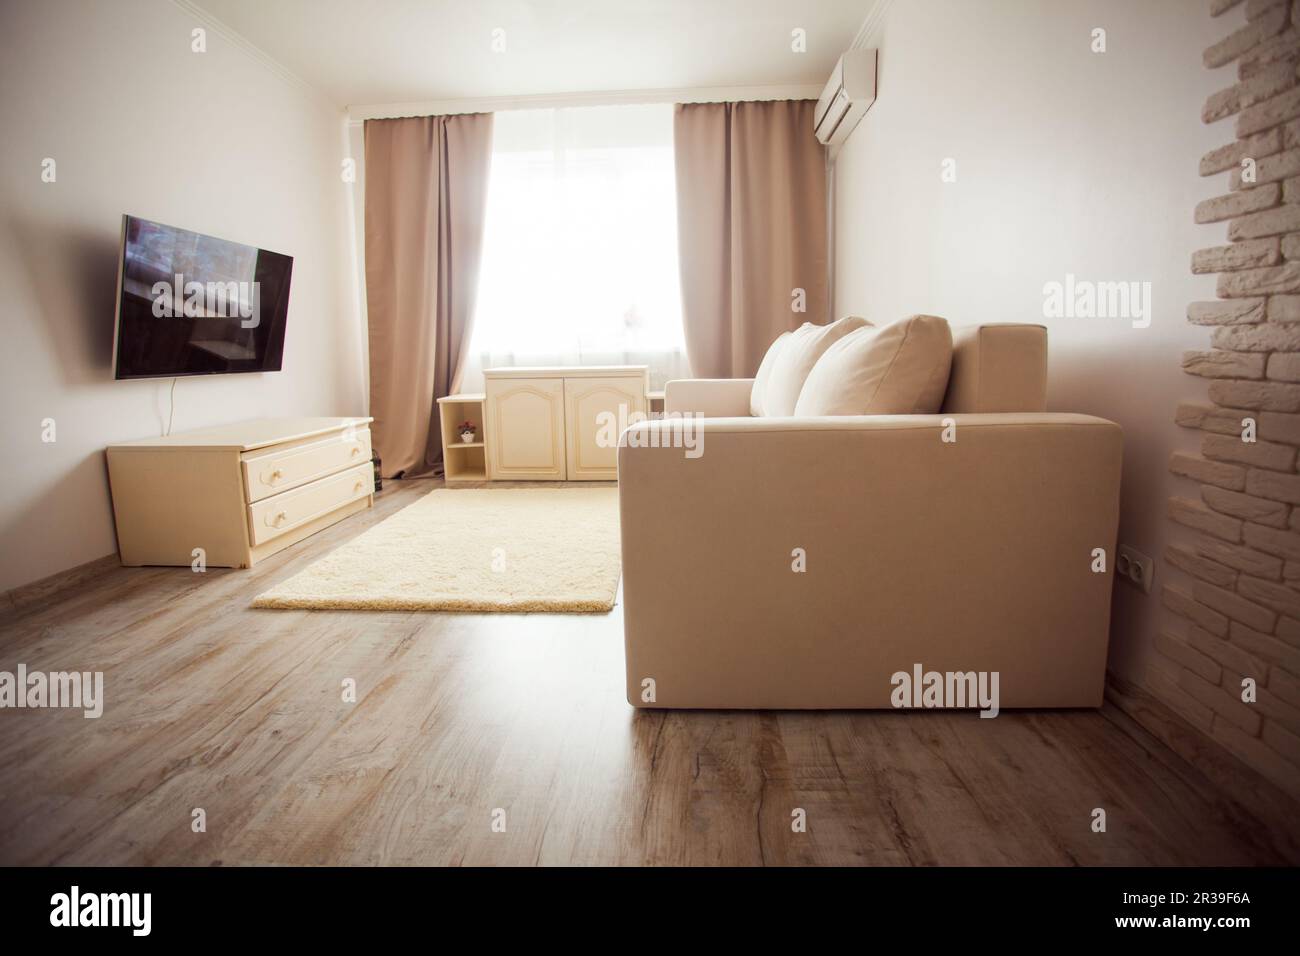 Moderno salotto in stile minimalismo con interni in toni beige Foto Stock